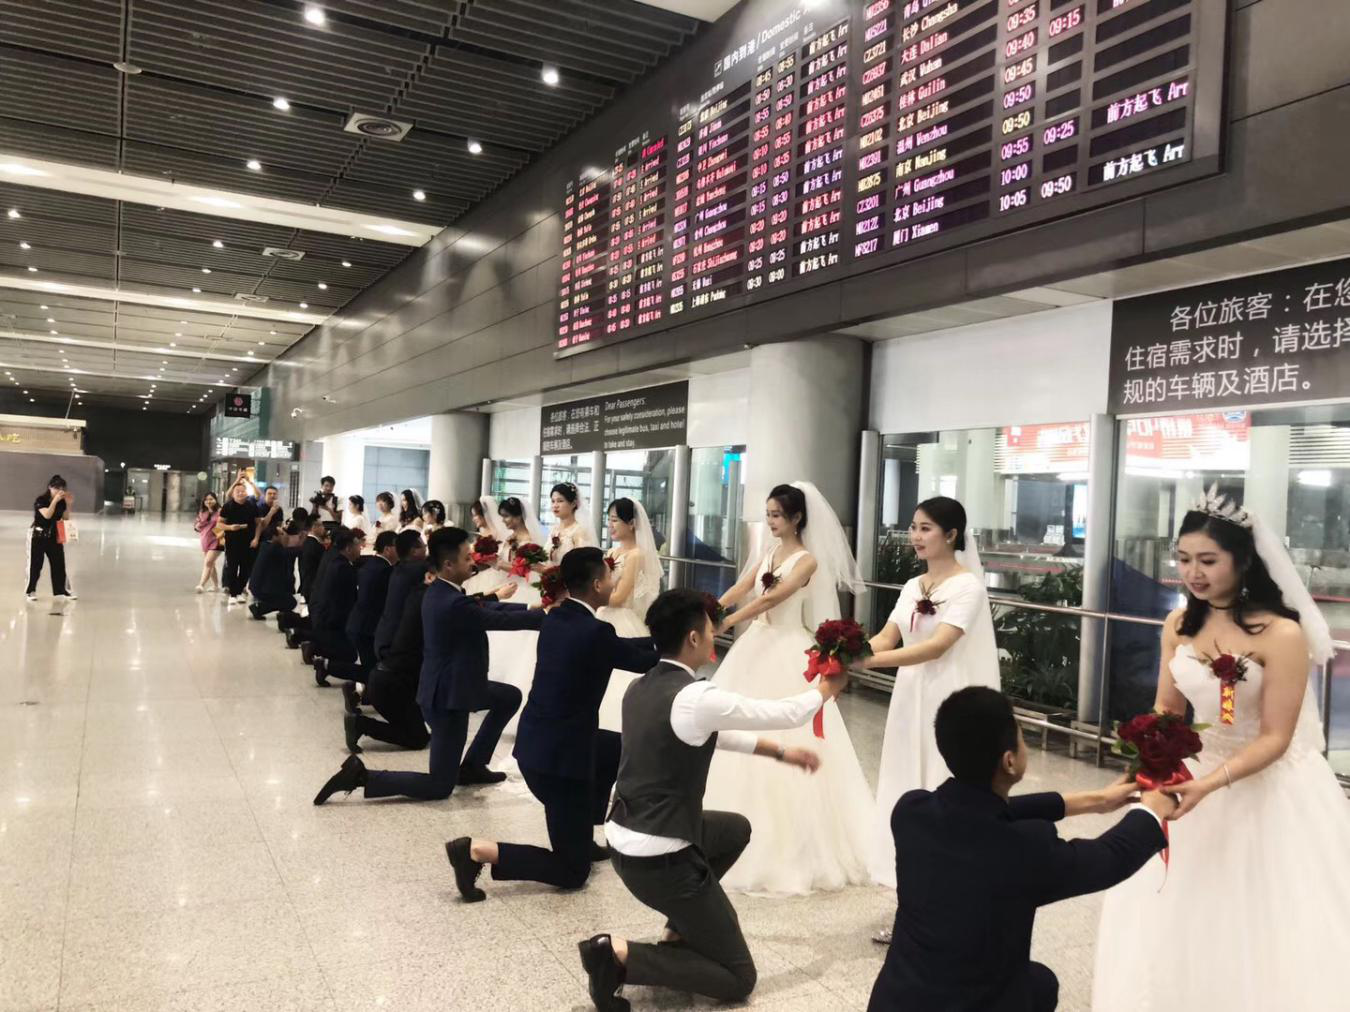 机场城际建设者在列车上举办集体婚礼